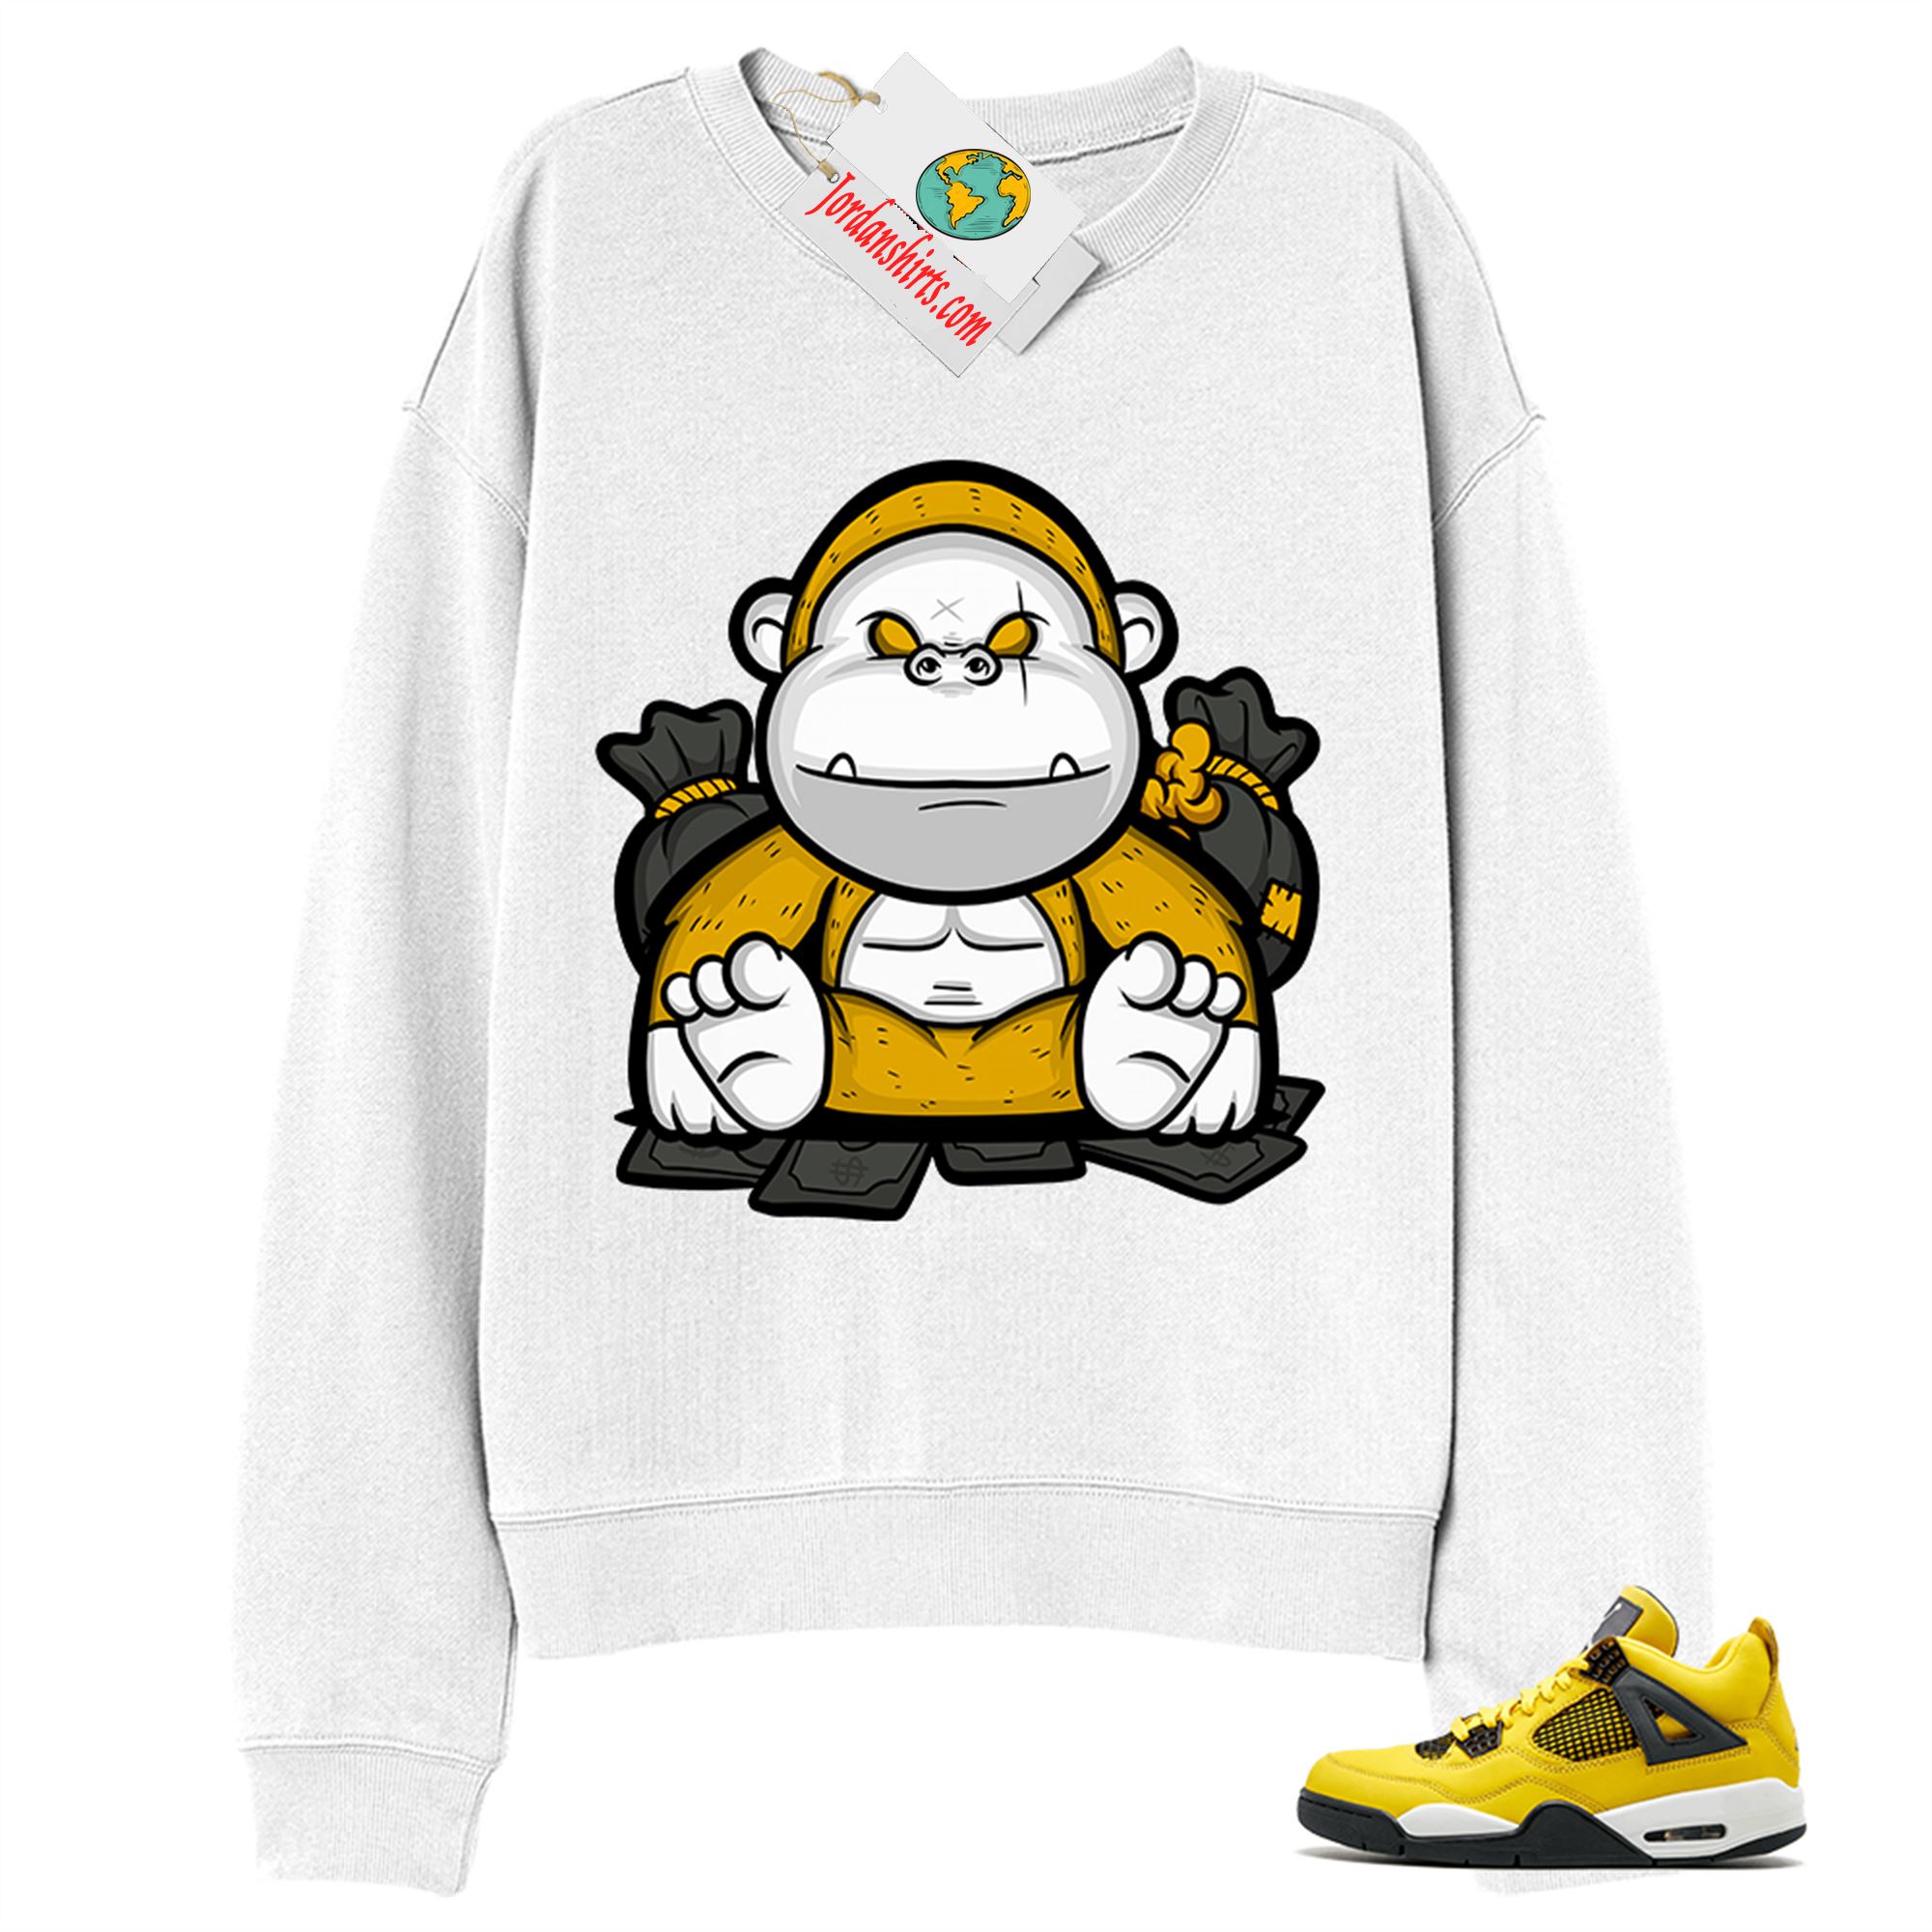 Jordan 4 Sweatshirt, Rich Gorilla With Money White Sweatshirt Air Jordan 4 Tour Yellow Lightning 4s Plus Size Up To 5xl